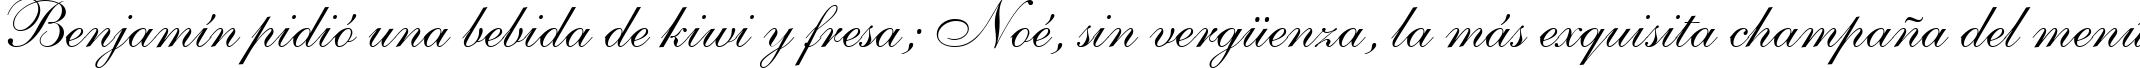 Пример написания шрифтом Allegretto Script One текста на испанском